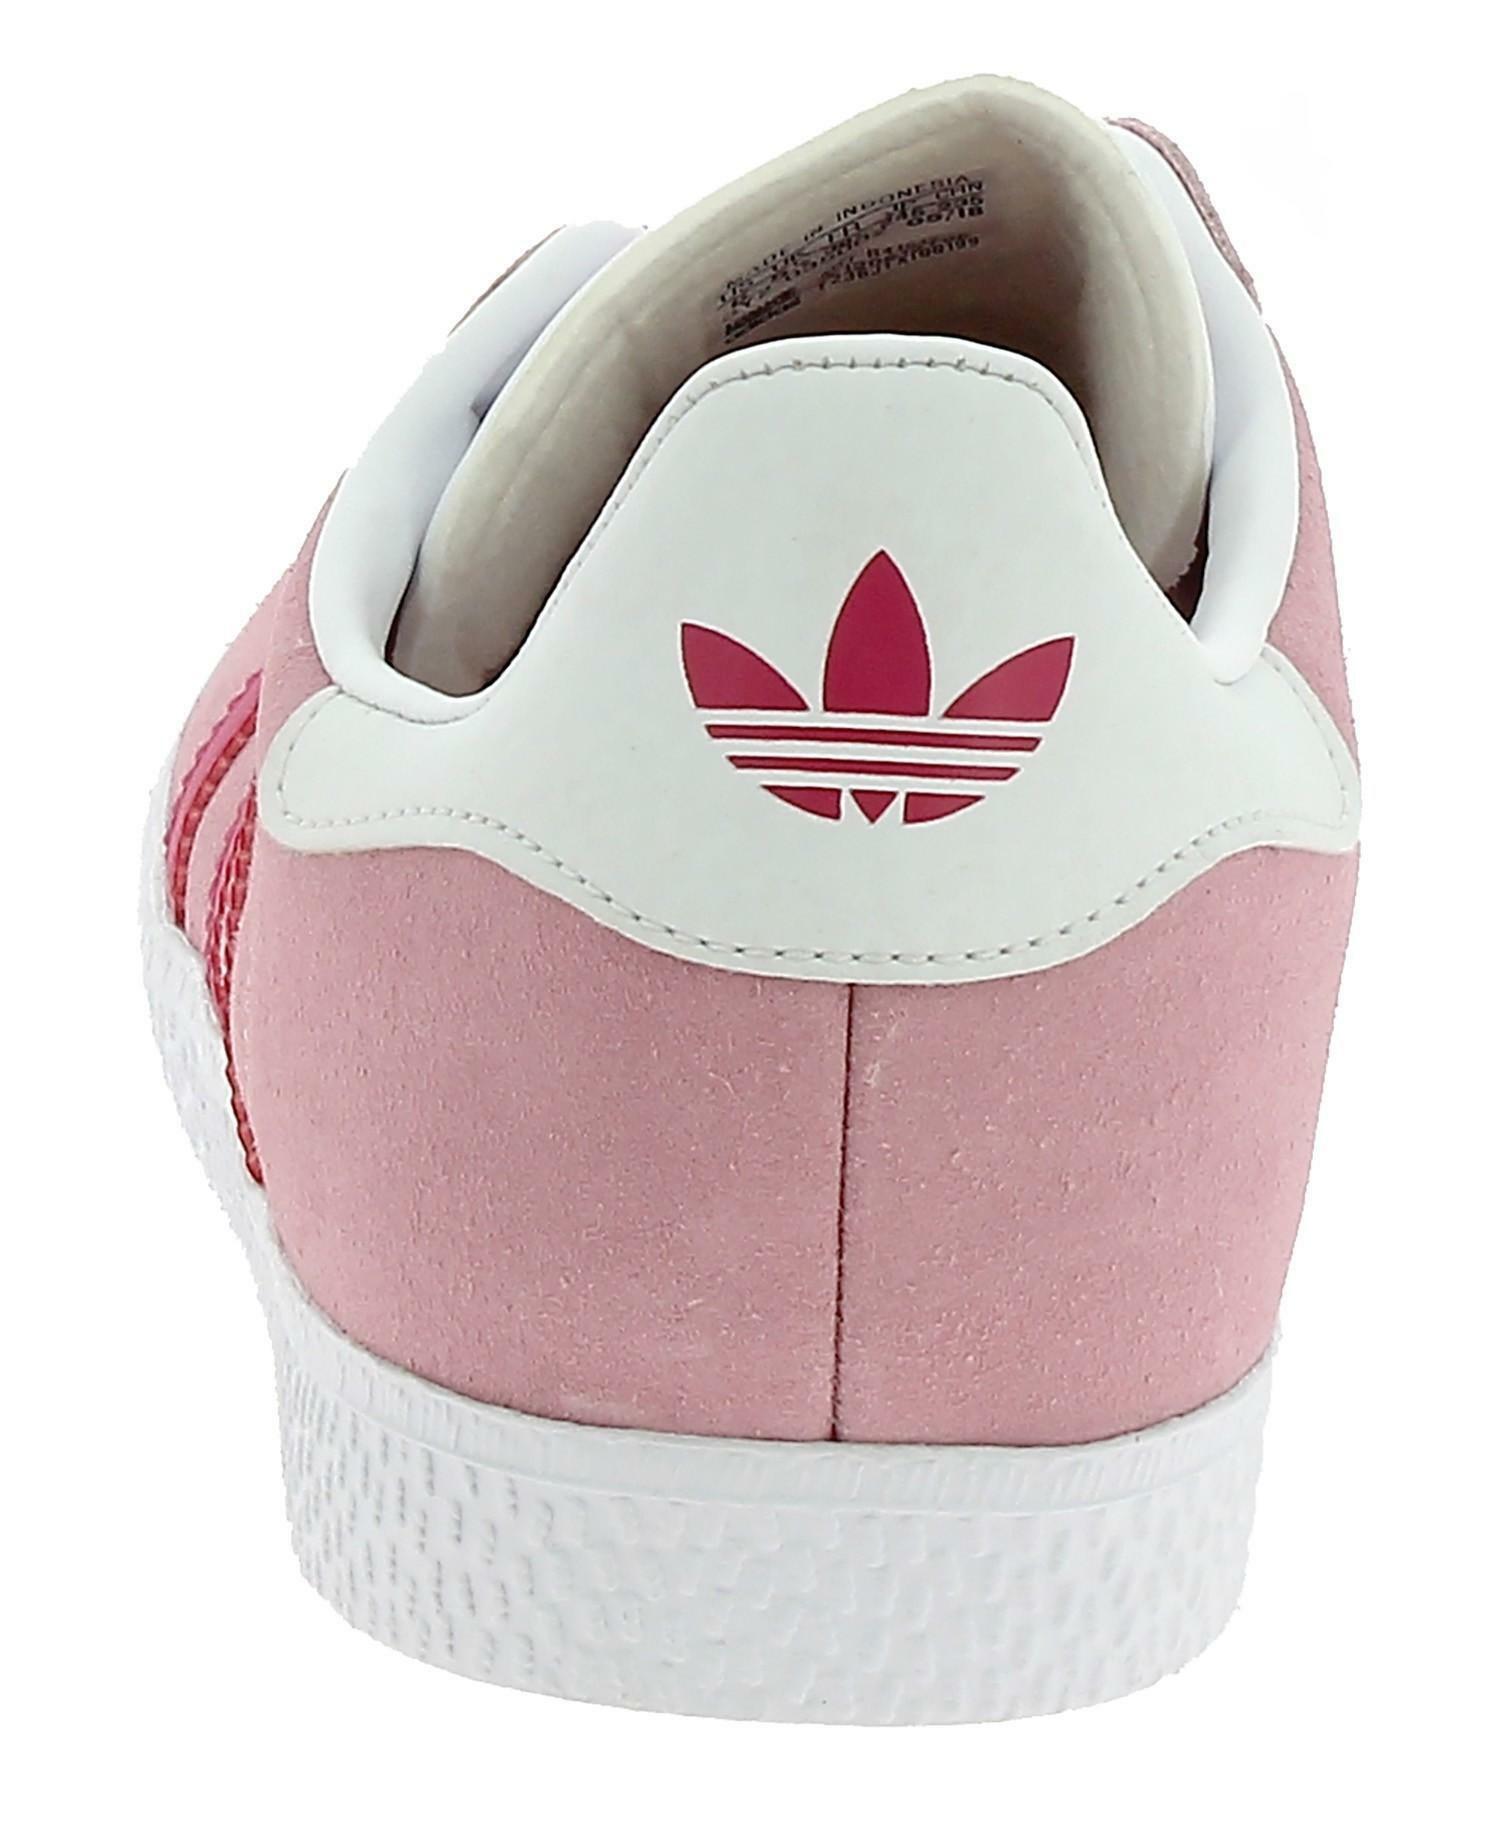 adidas adidas gazelle scarpe sportive donna rosa b41517